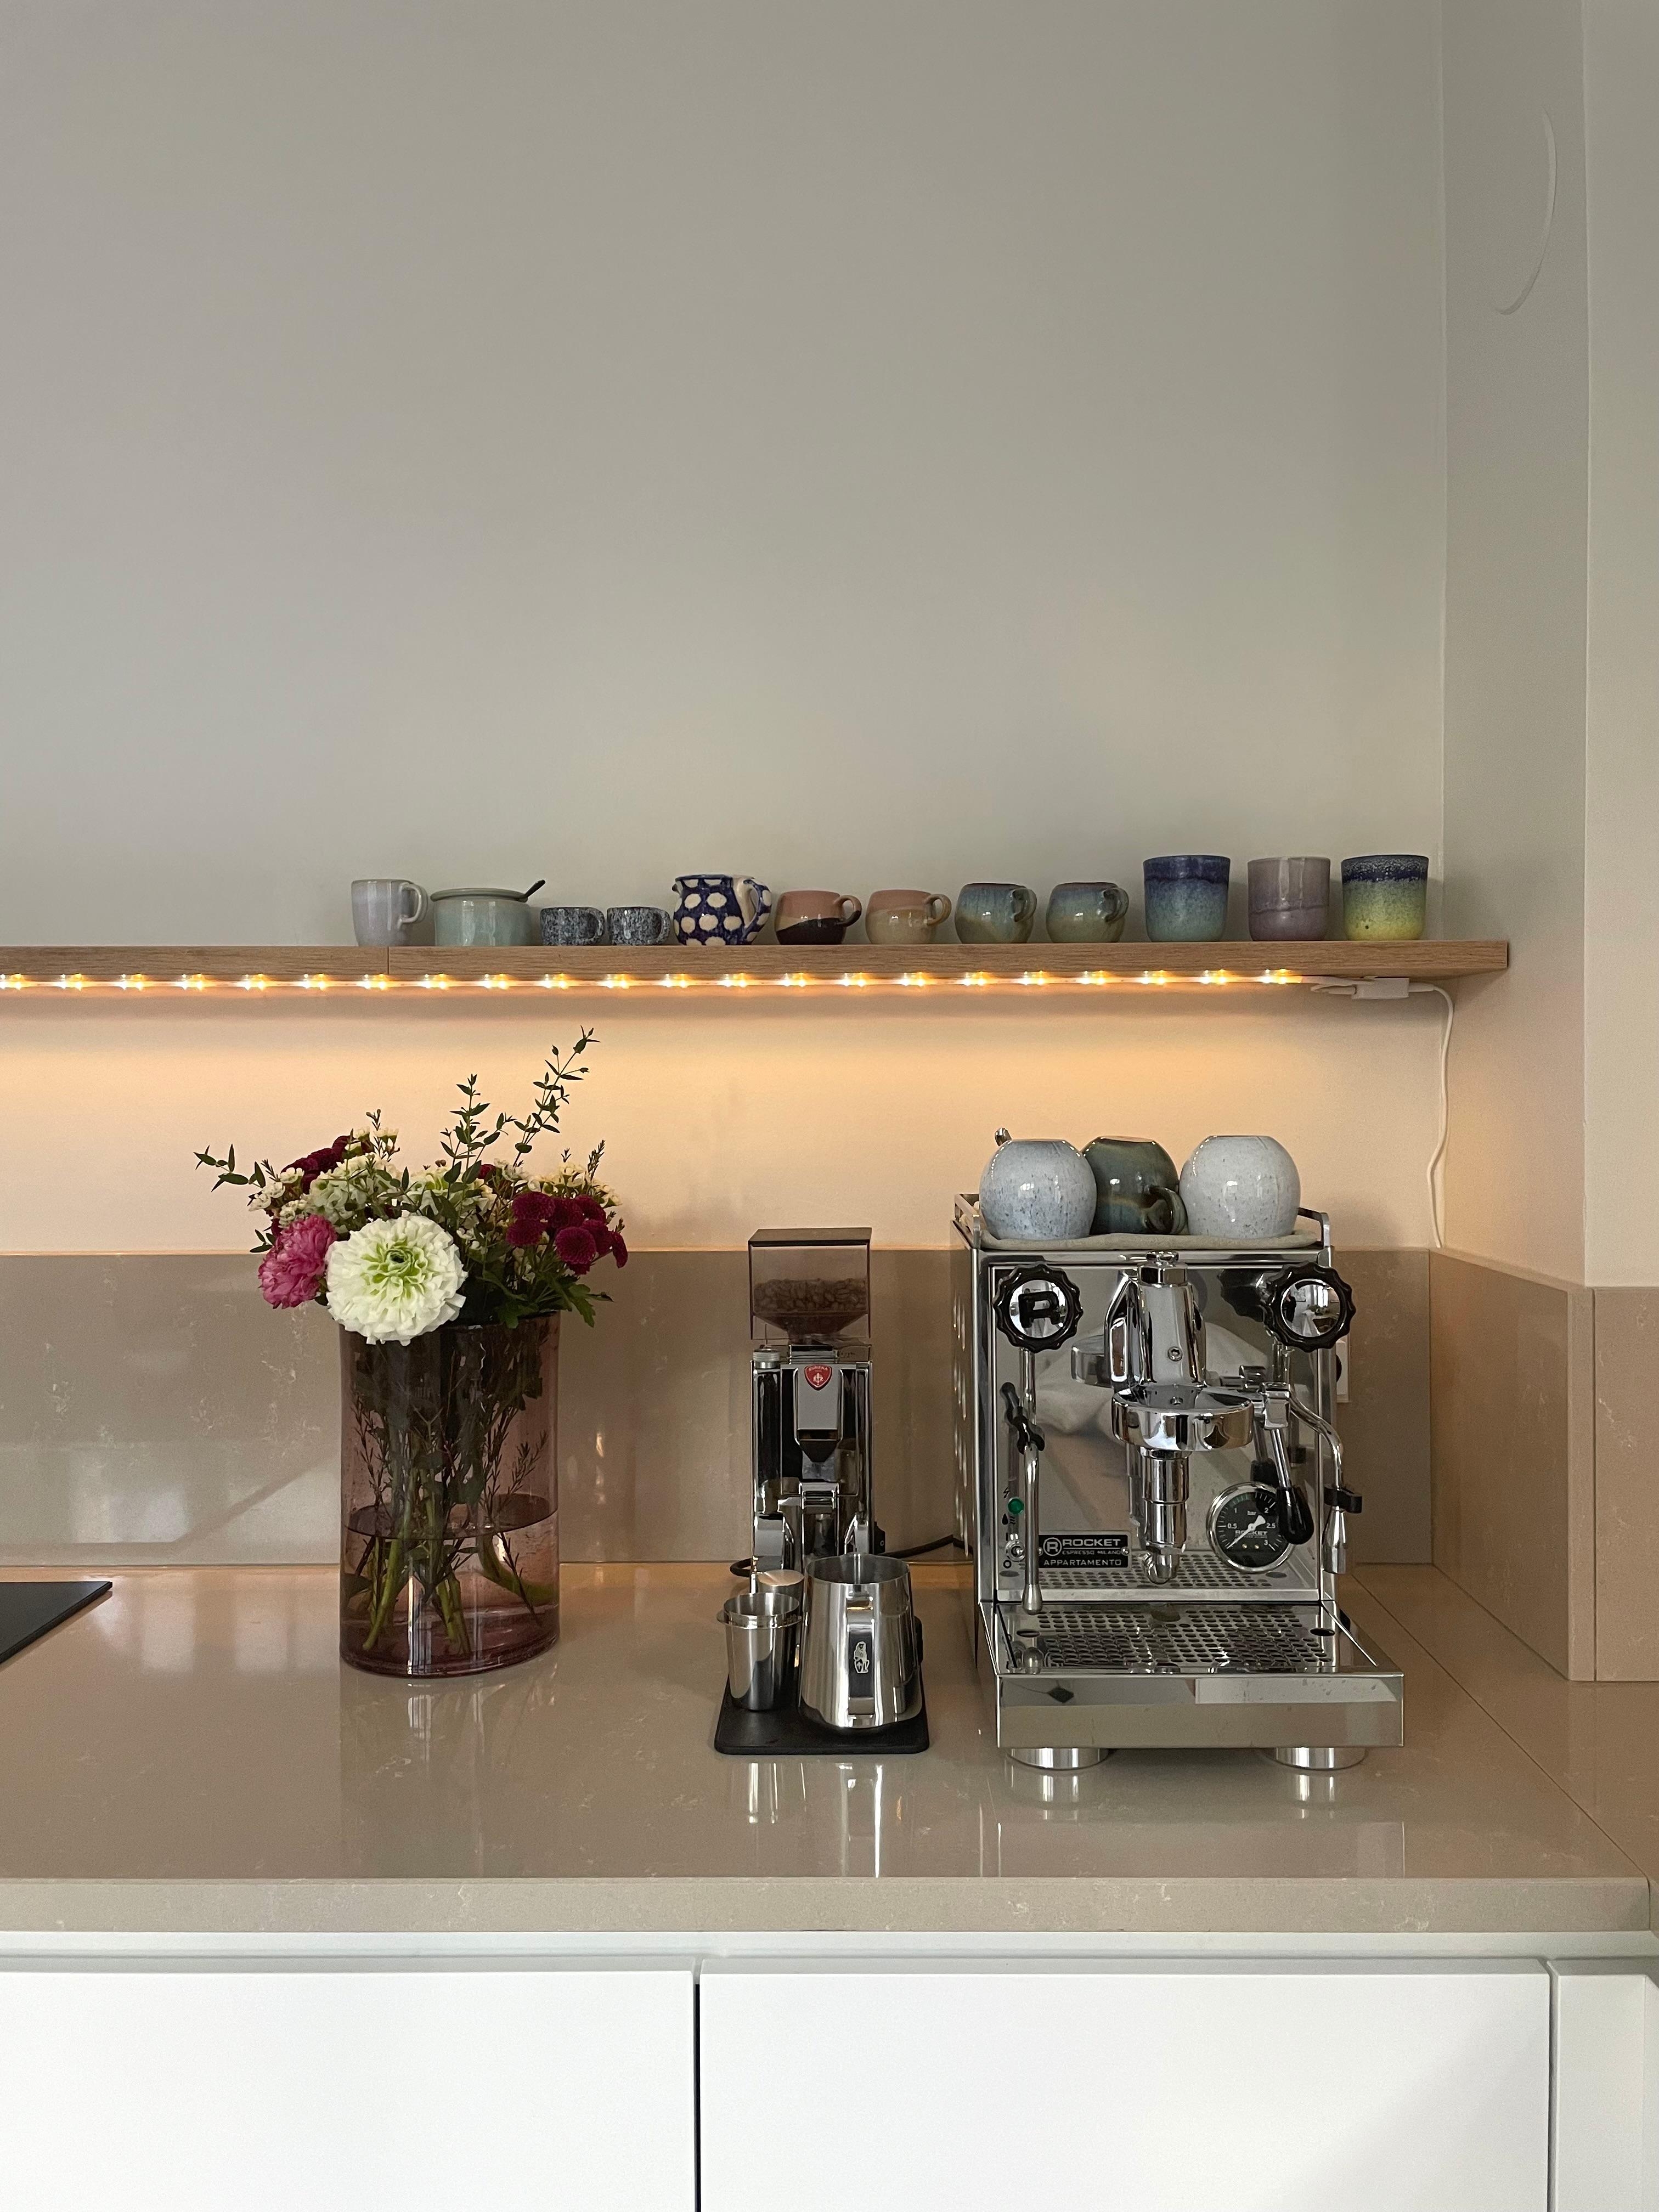 #küche #kaffeeecke #siebträger #espresso #cappuccino #altbau #altbauliebe 